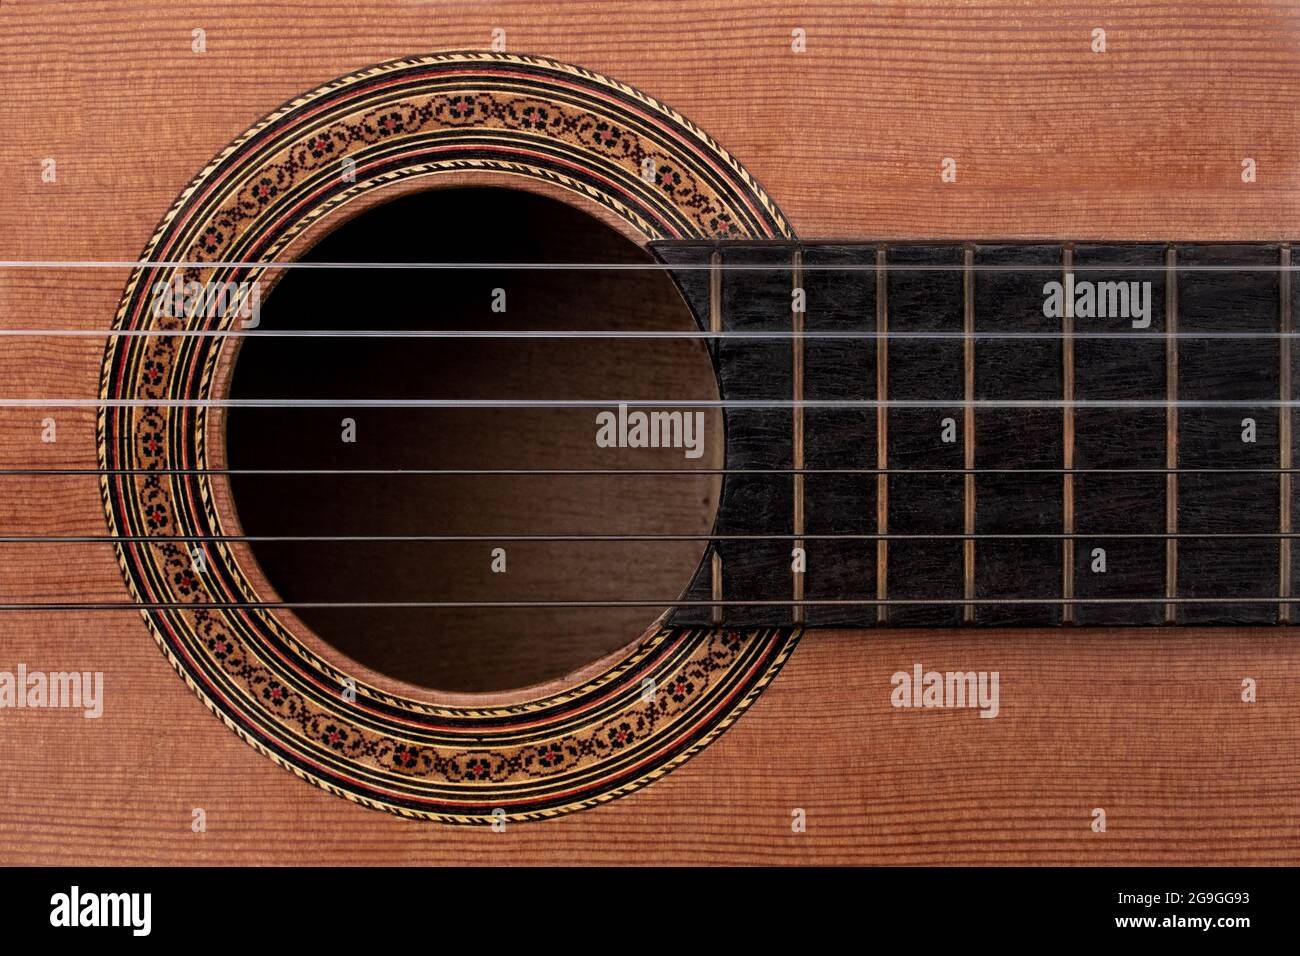 Primo piano di una vecchia chitarra acustica che mostra i dettagli della decalcomania di rosette decorative intorno al soundhole, alle corde e a parte della tastiera in ebano. Vista dall'alto verso il basso Foto Stock